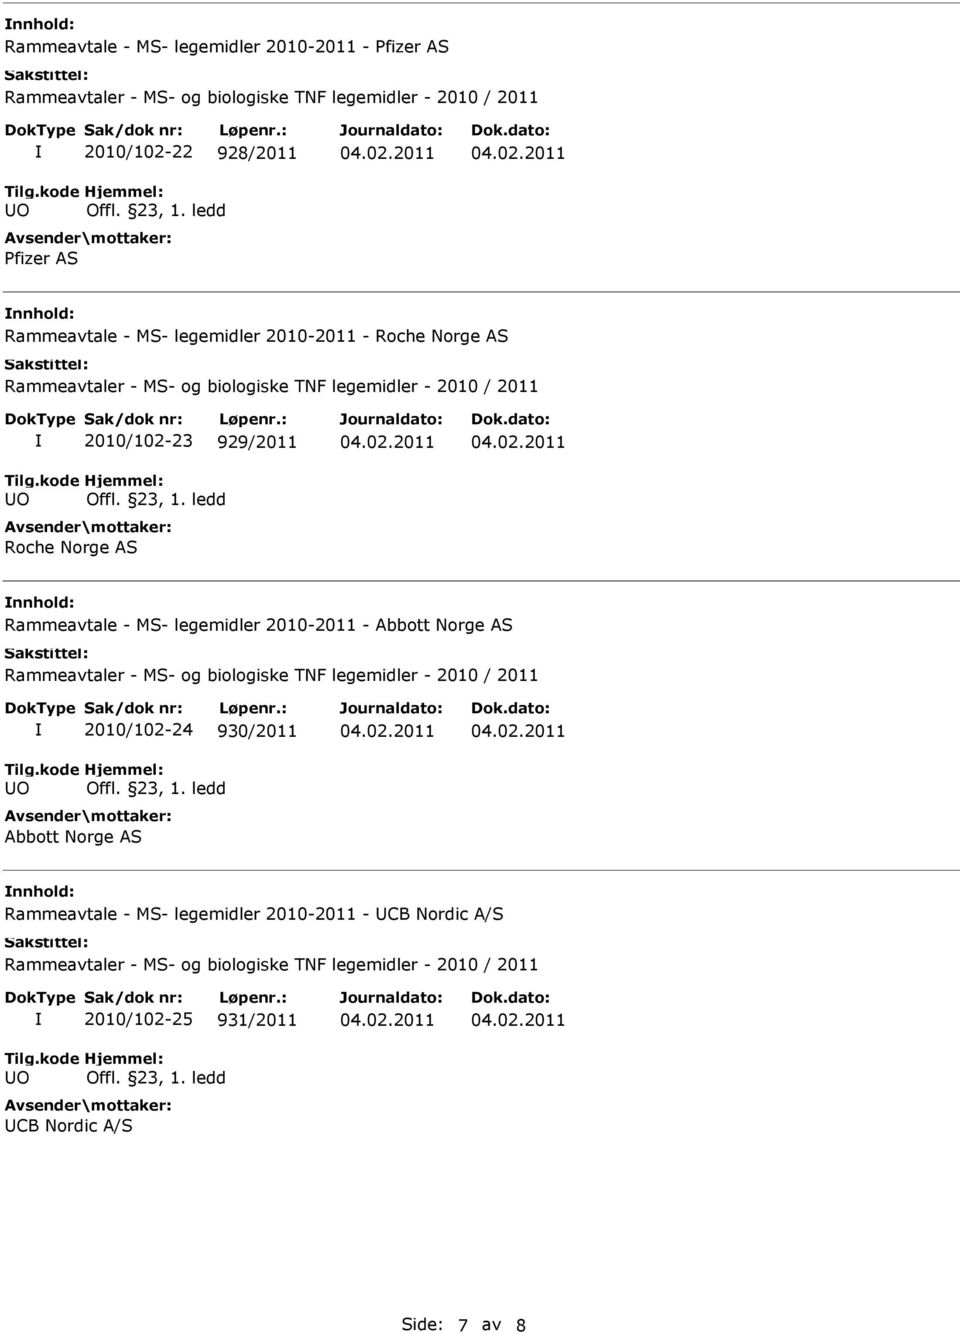 Rammeavtale - MS- legemidler 2010-2011 - Abbott Norge AS 2010/102-24 930/2011 Abbott Norge